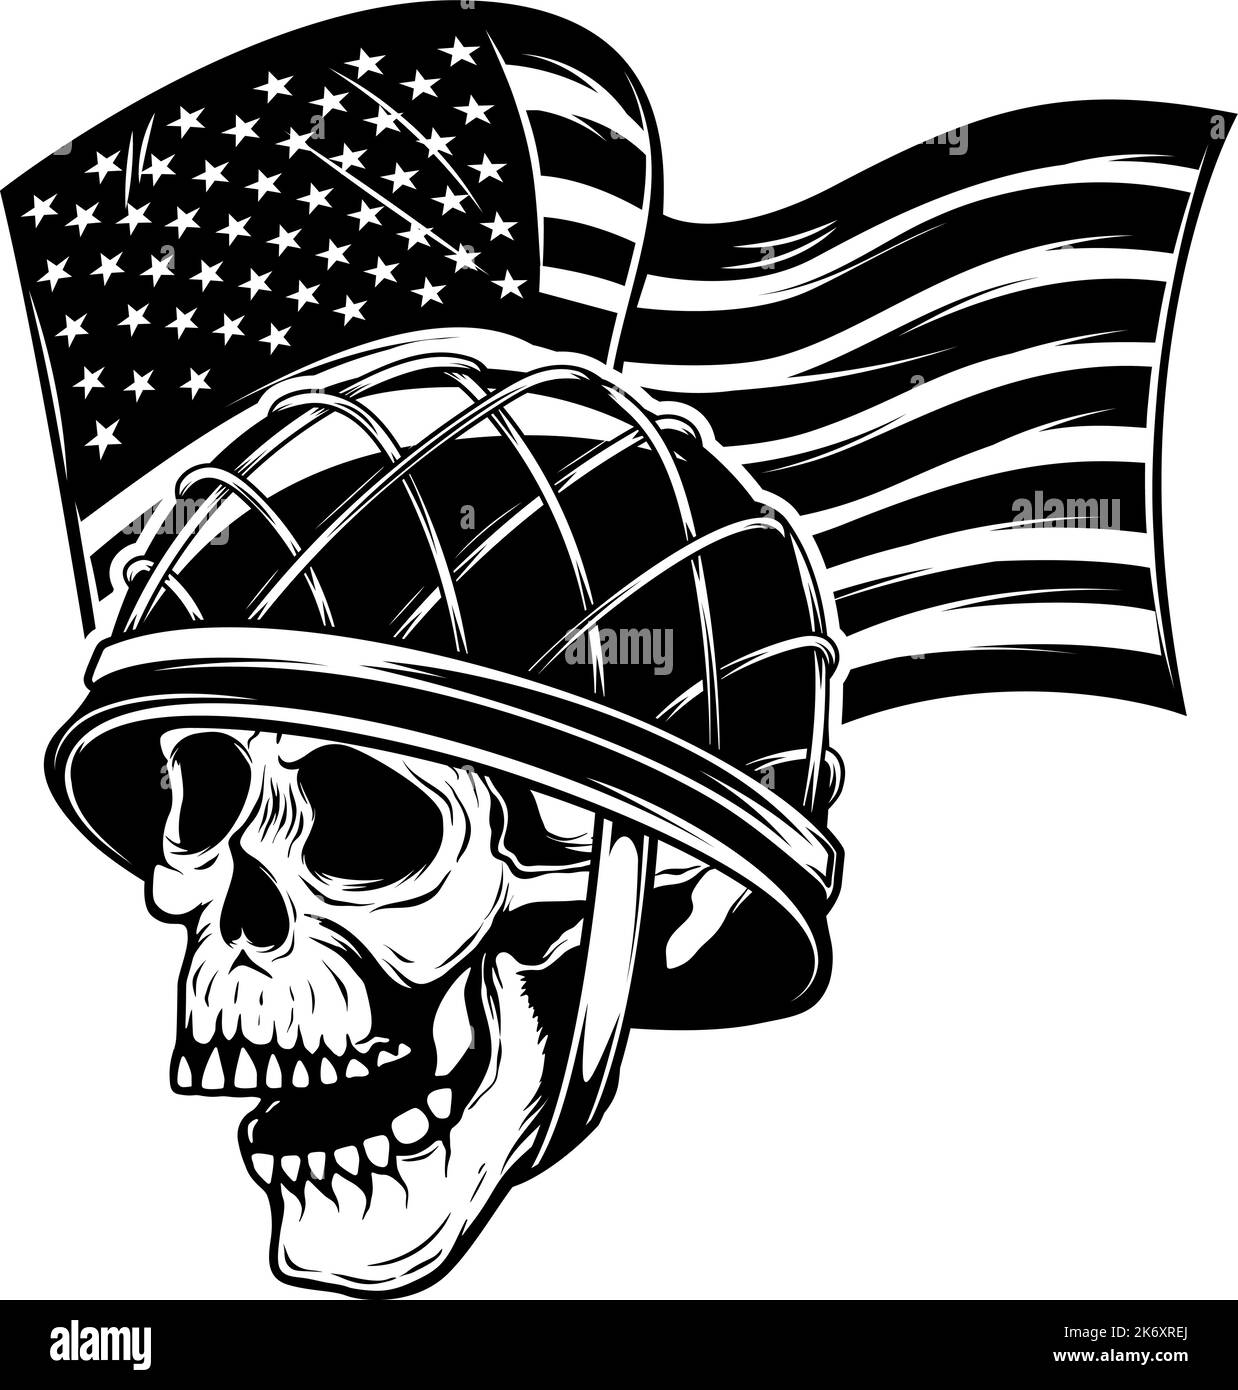 Crâne dans un casque militaire sur fond de drapeau américain. Crâne du soldat. Élément de conception pour affiche, carte, bannière, affiche. Illustration vectorielle Illustration de Vecteur